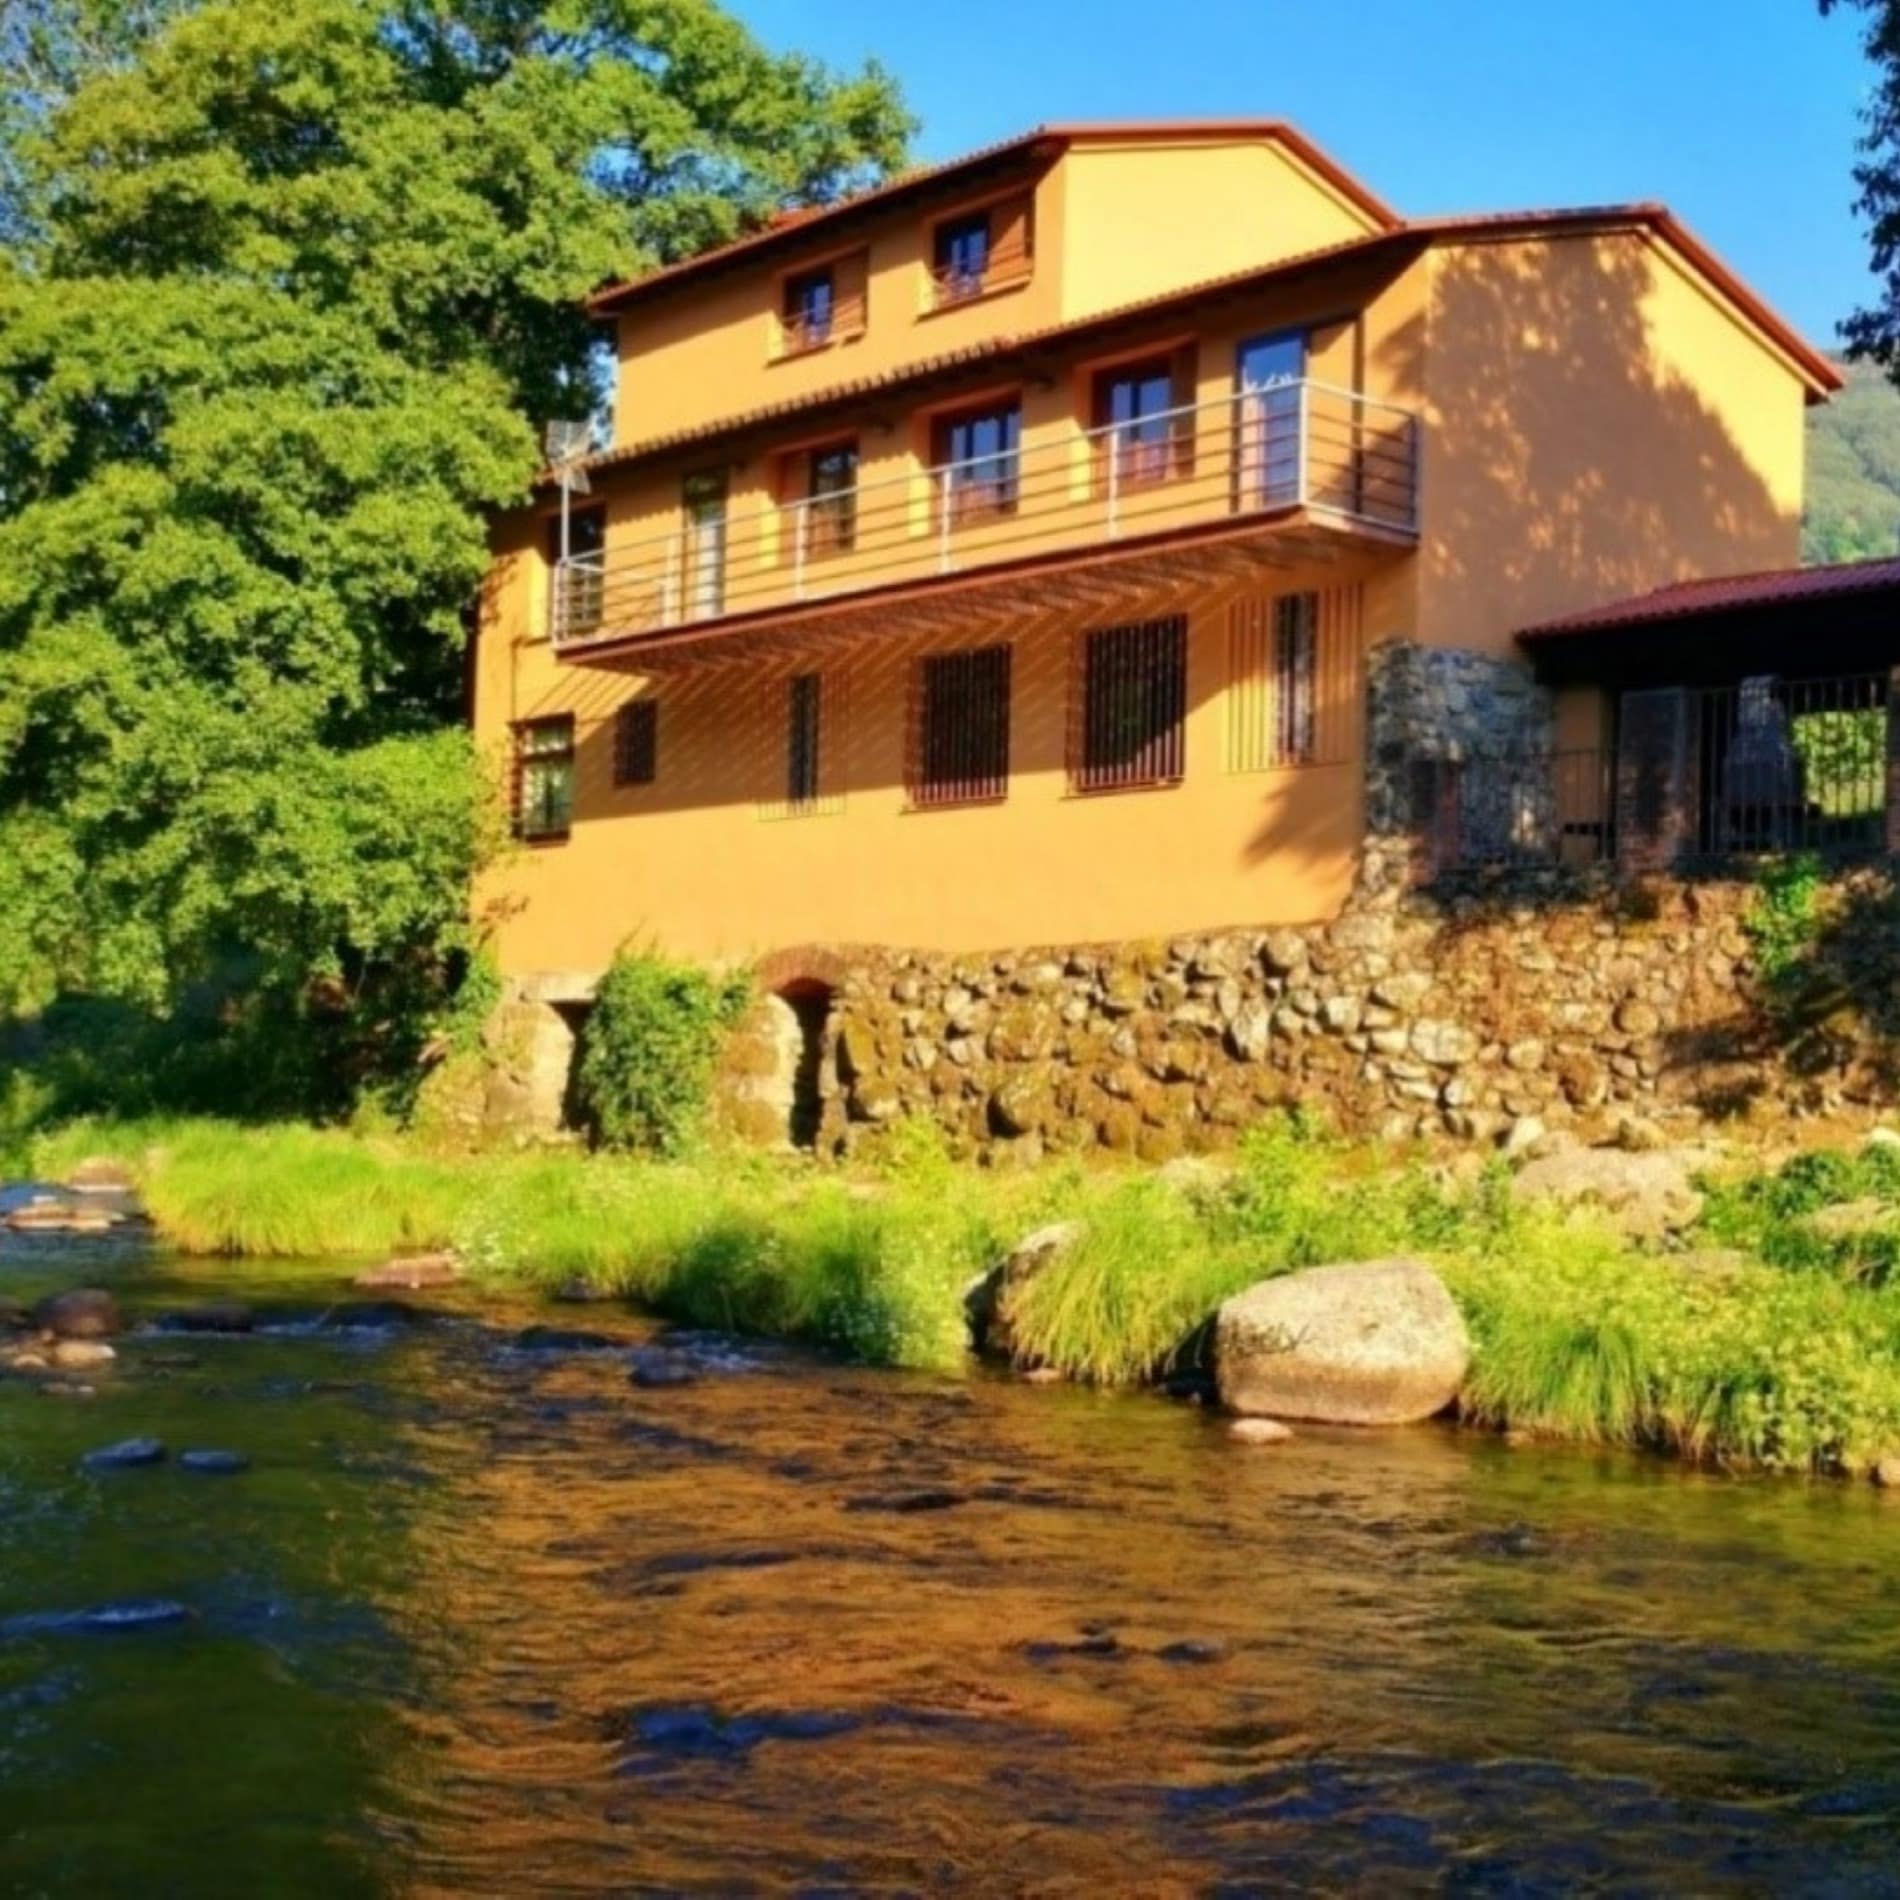 Casa rural en el valle del Jerte, situada a orillas del río